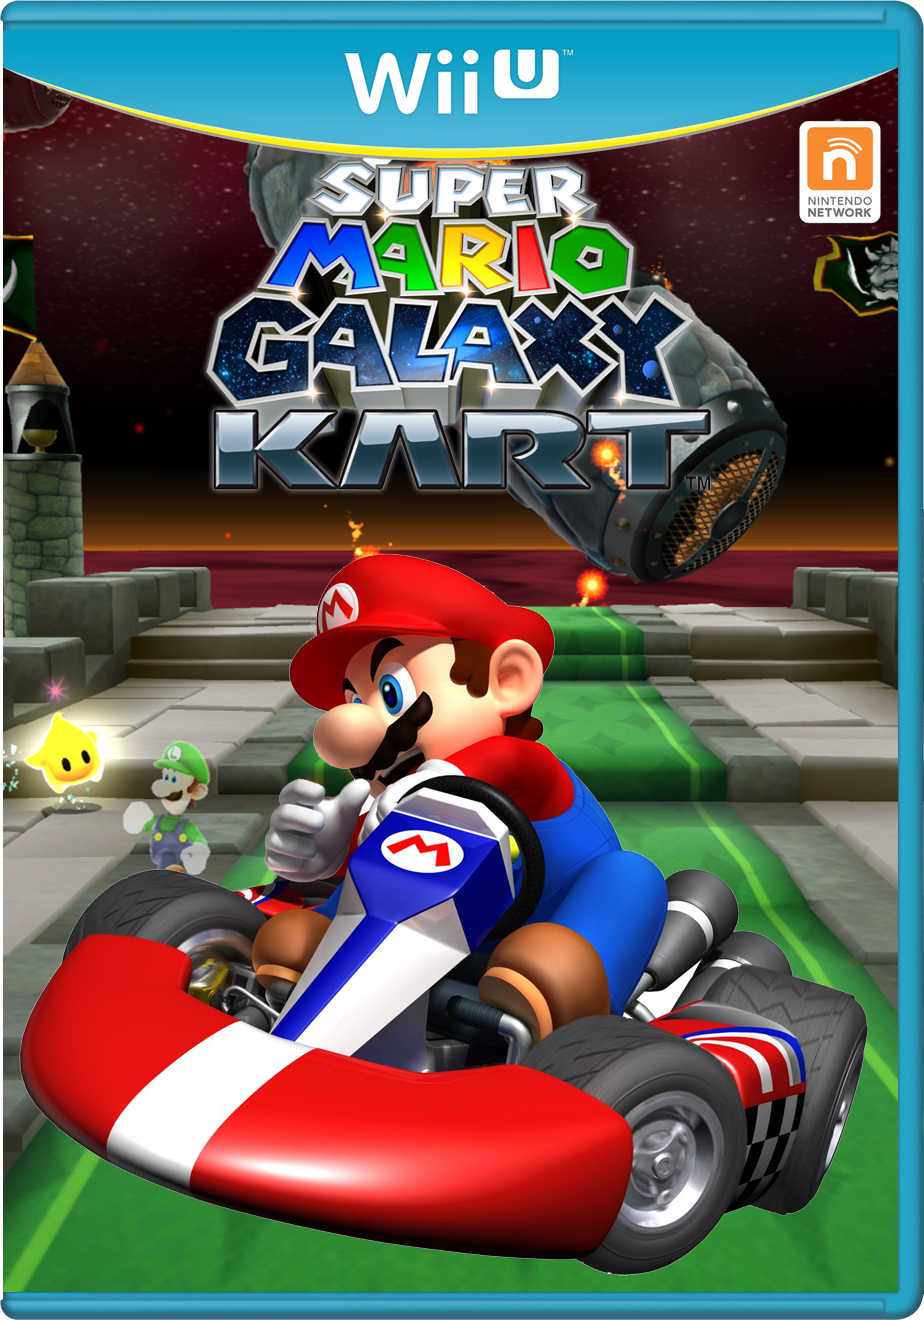 Super Mario Galaxy Kart - Nintendo Mashup Games